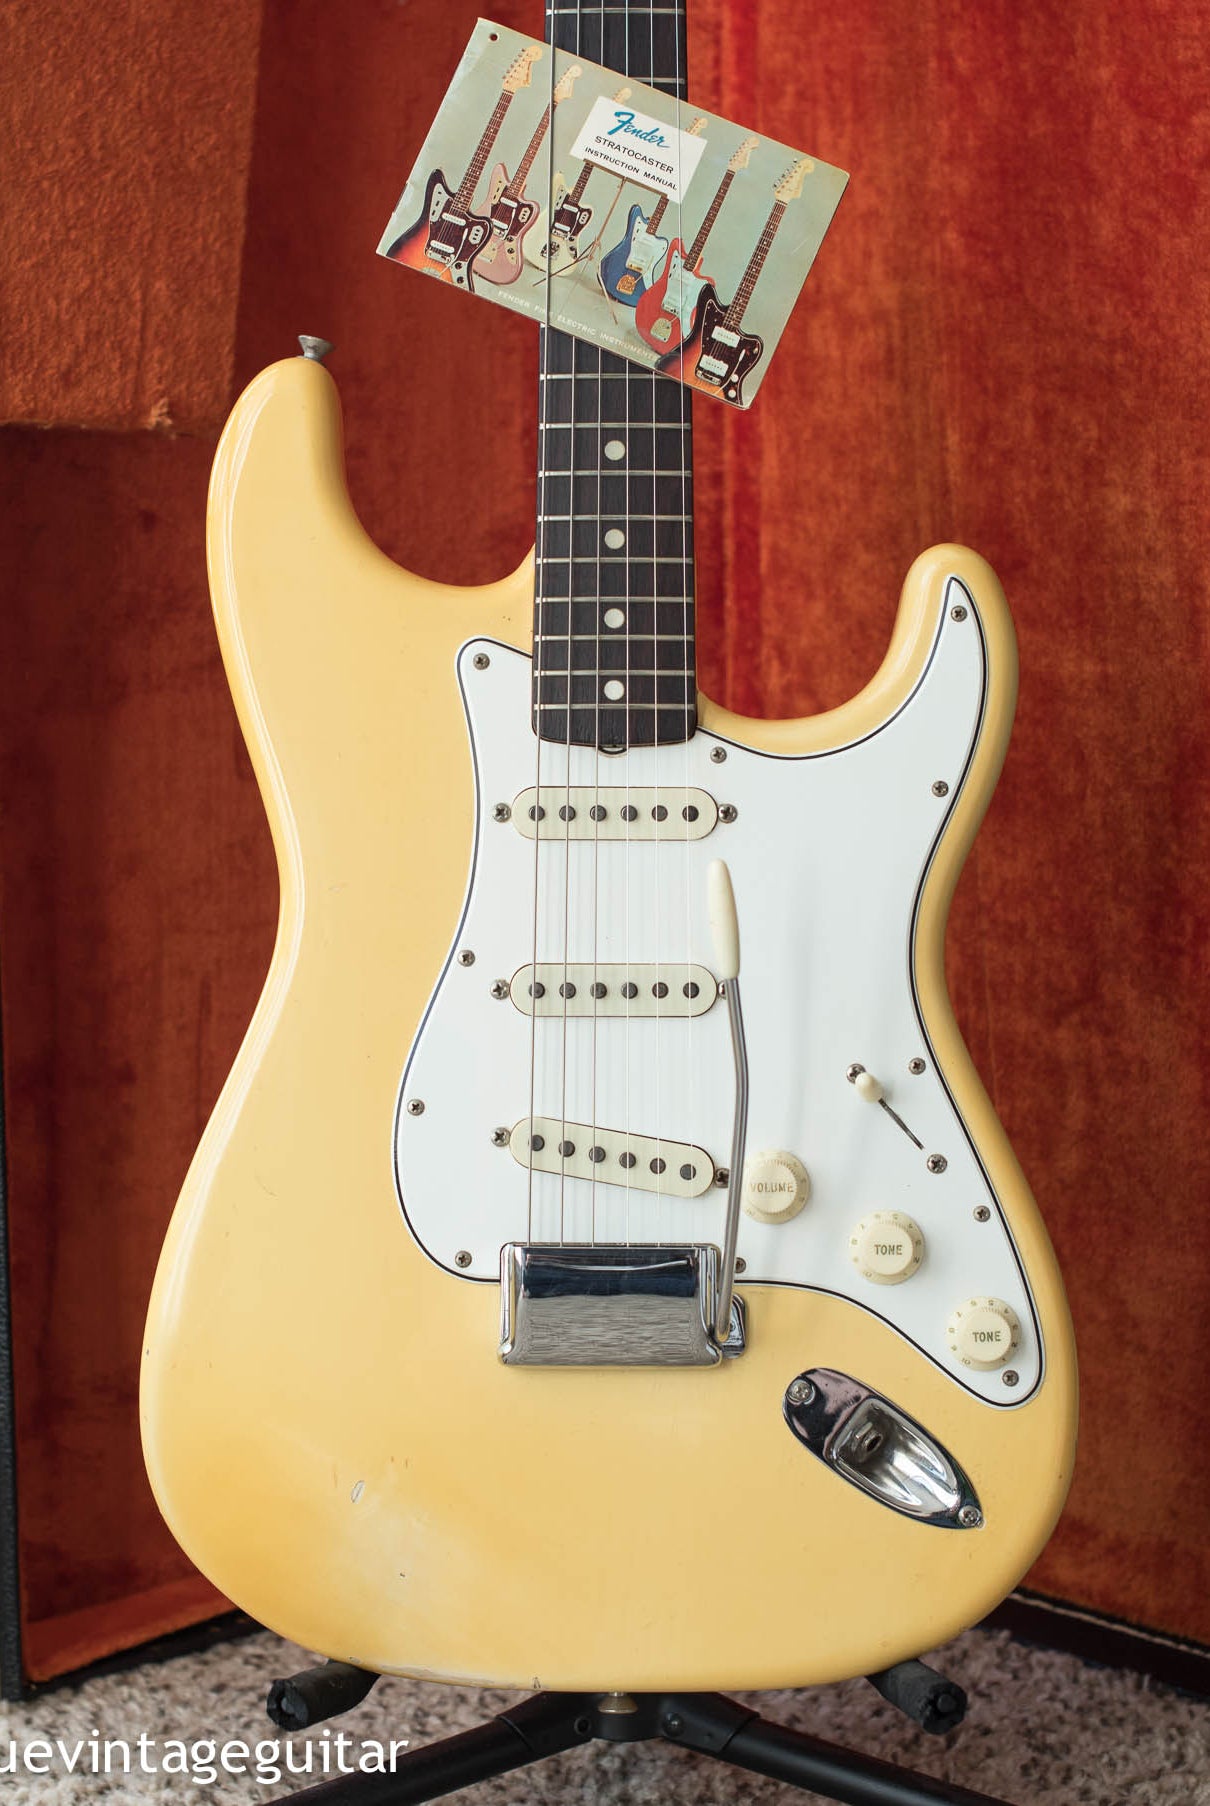 1965 Fender Stratocaster Olympic White guitar